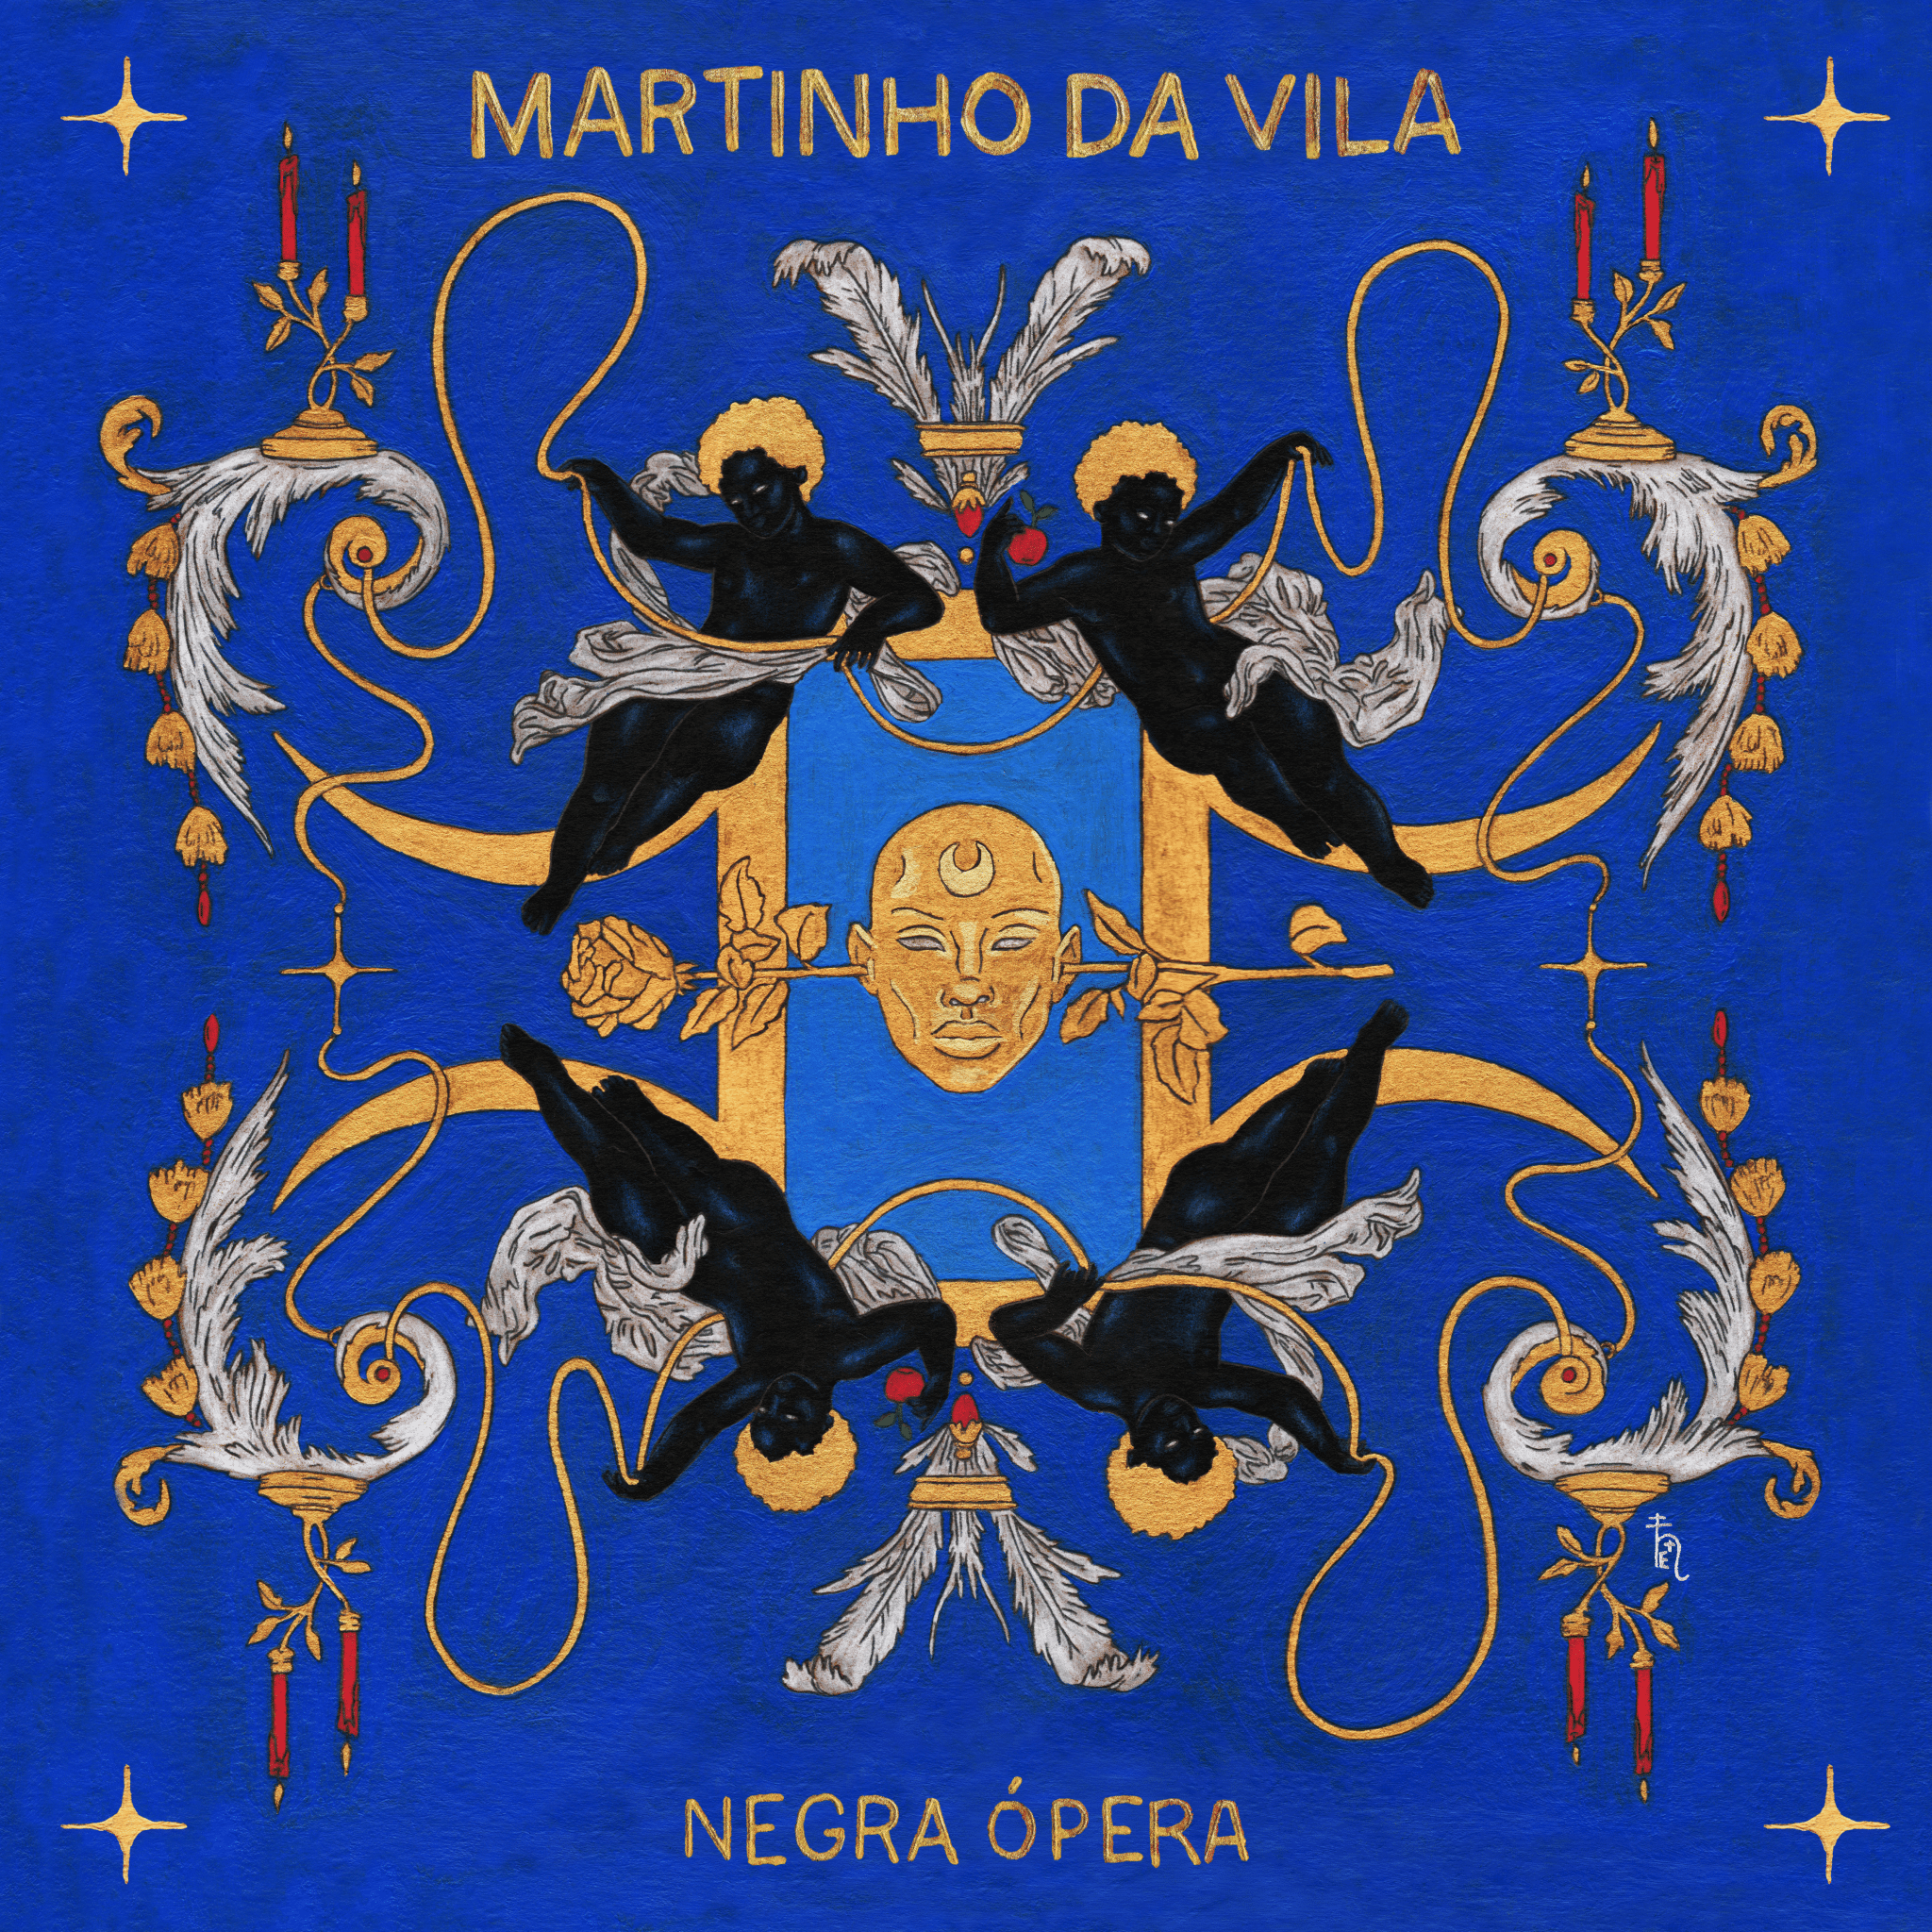 revistaprosaversoearte.com - 'Negra Ópera', álbum de Martinho da Vila